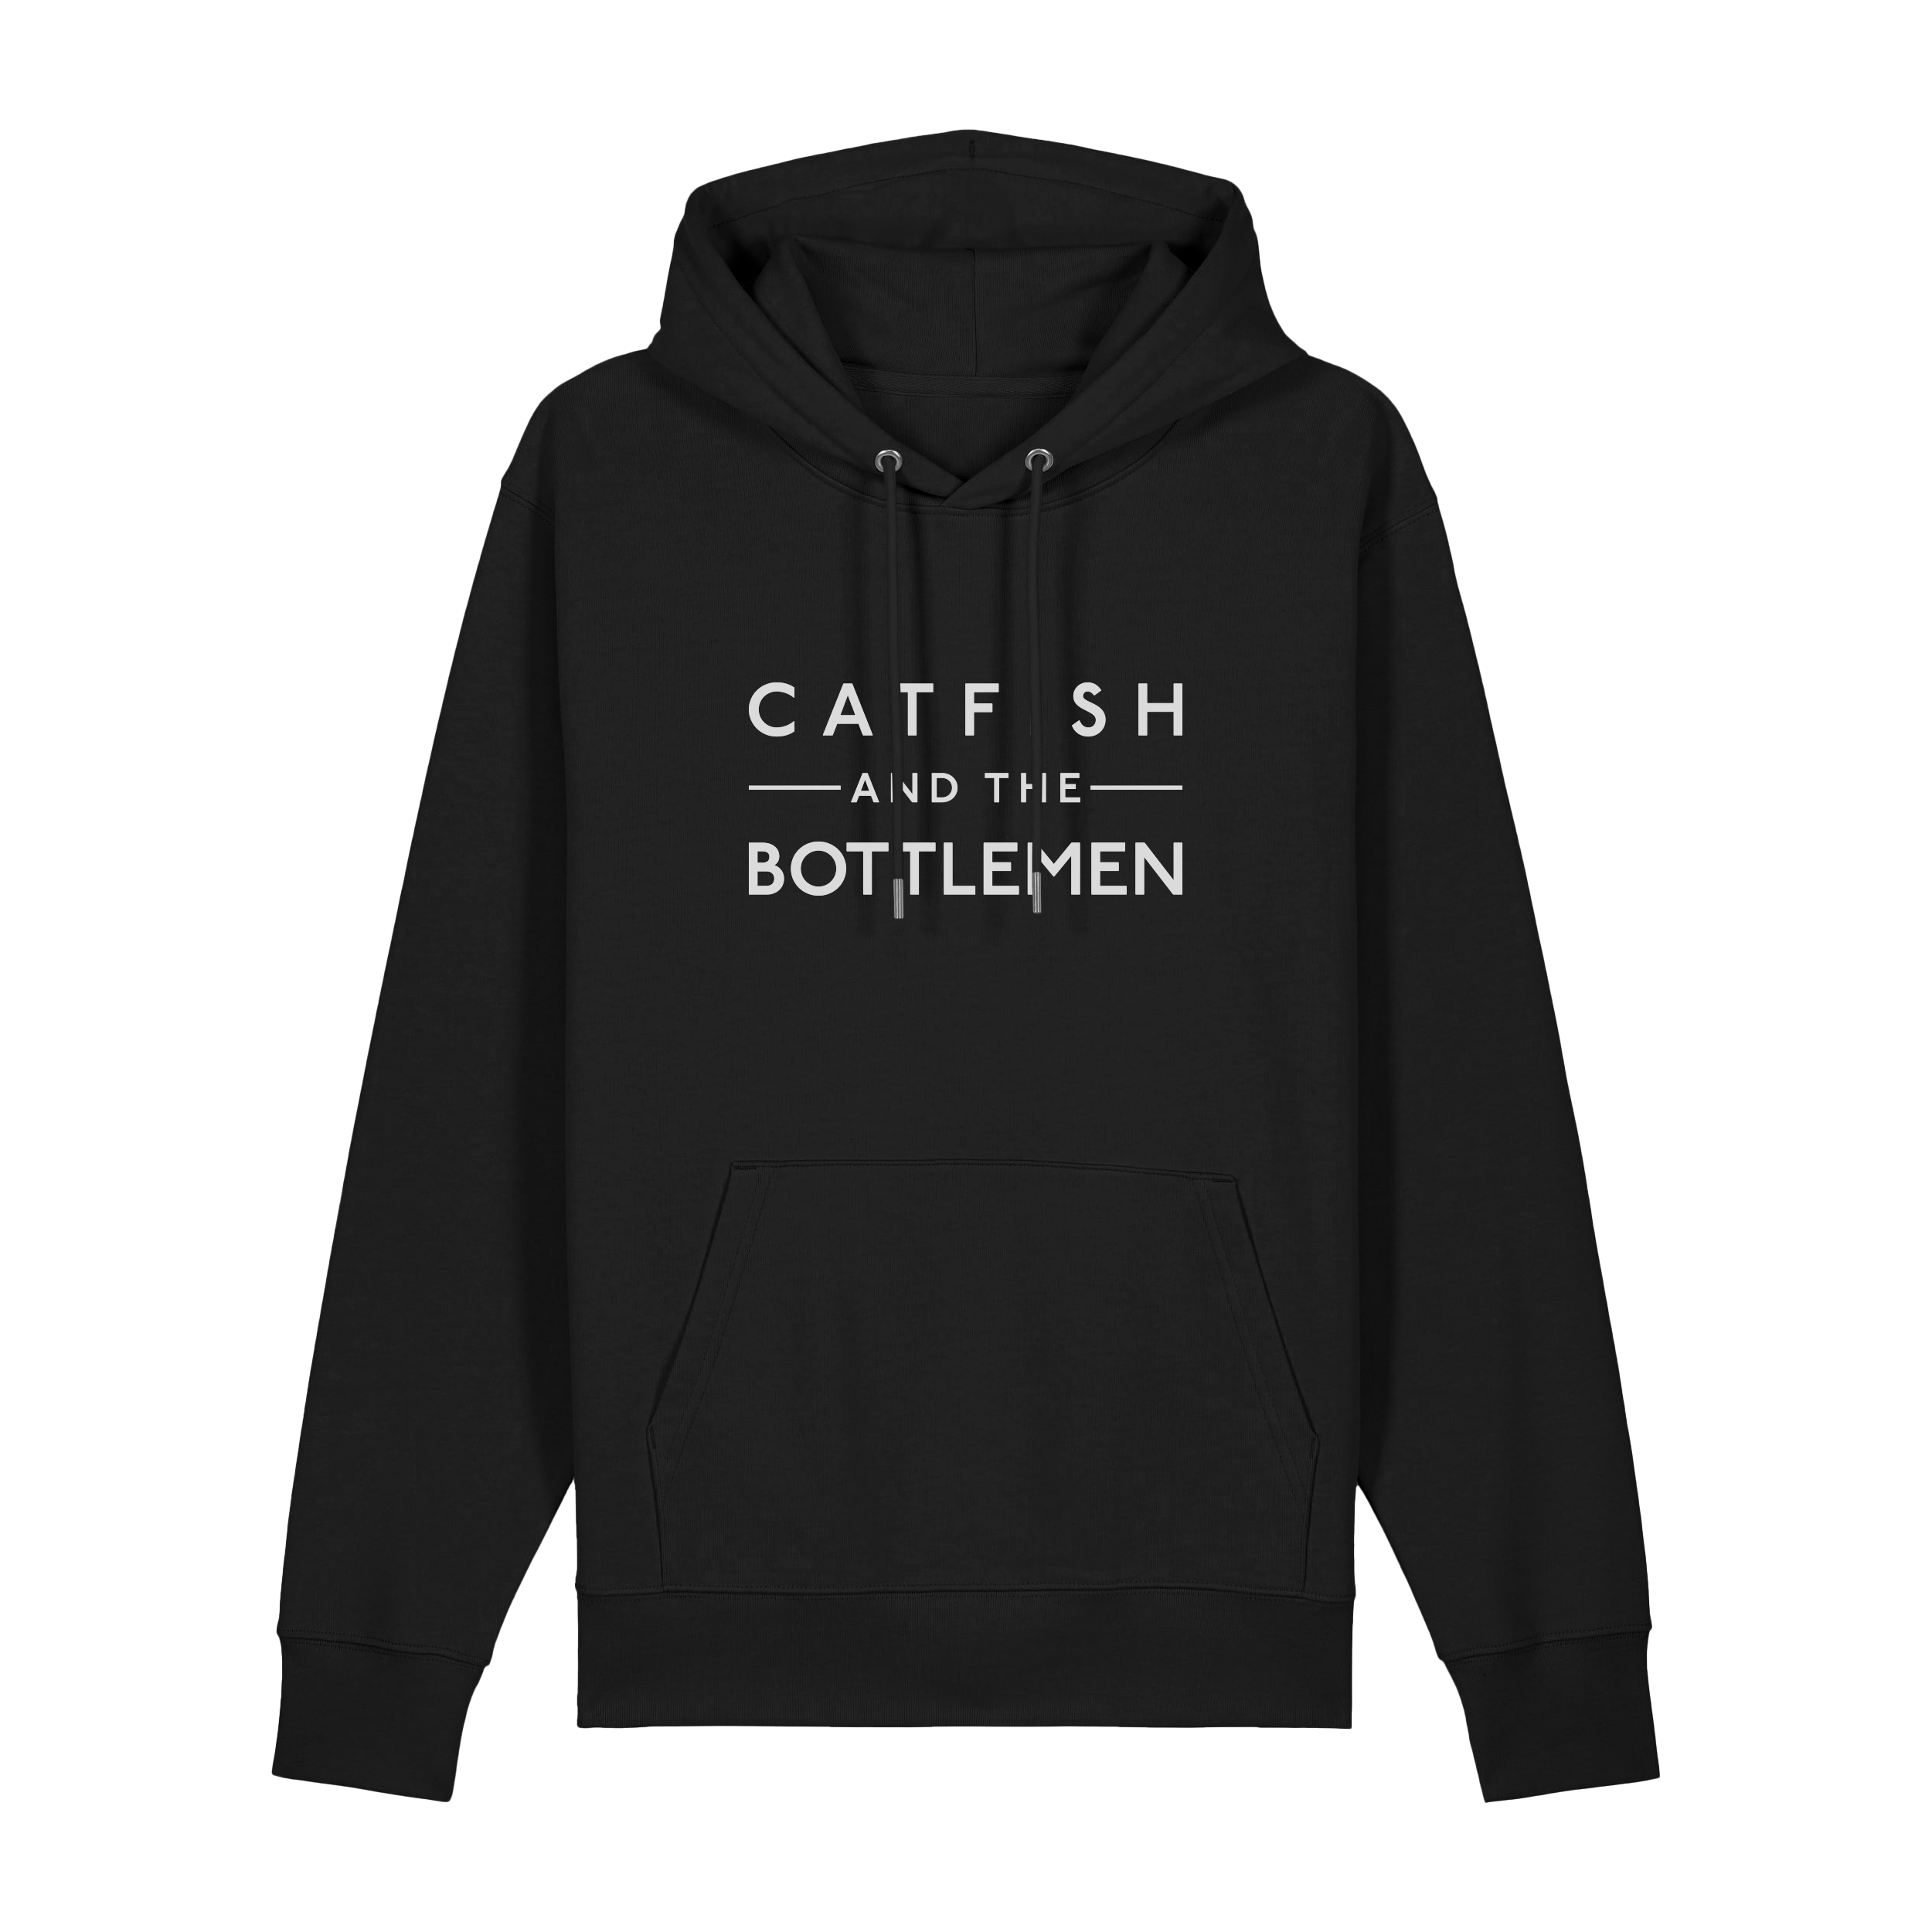 Catfish and the Bottlemen - Catfish and the Bottlemen Logo Black Hoodie